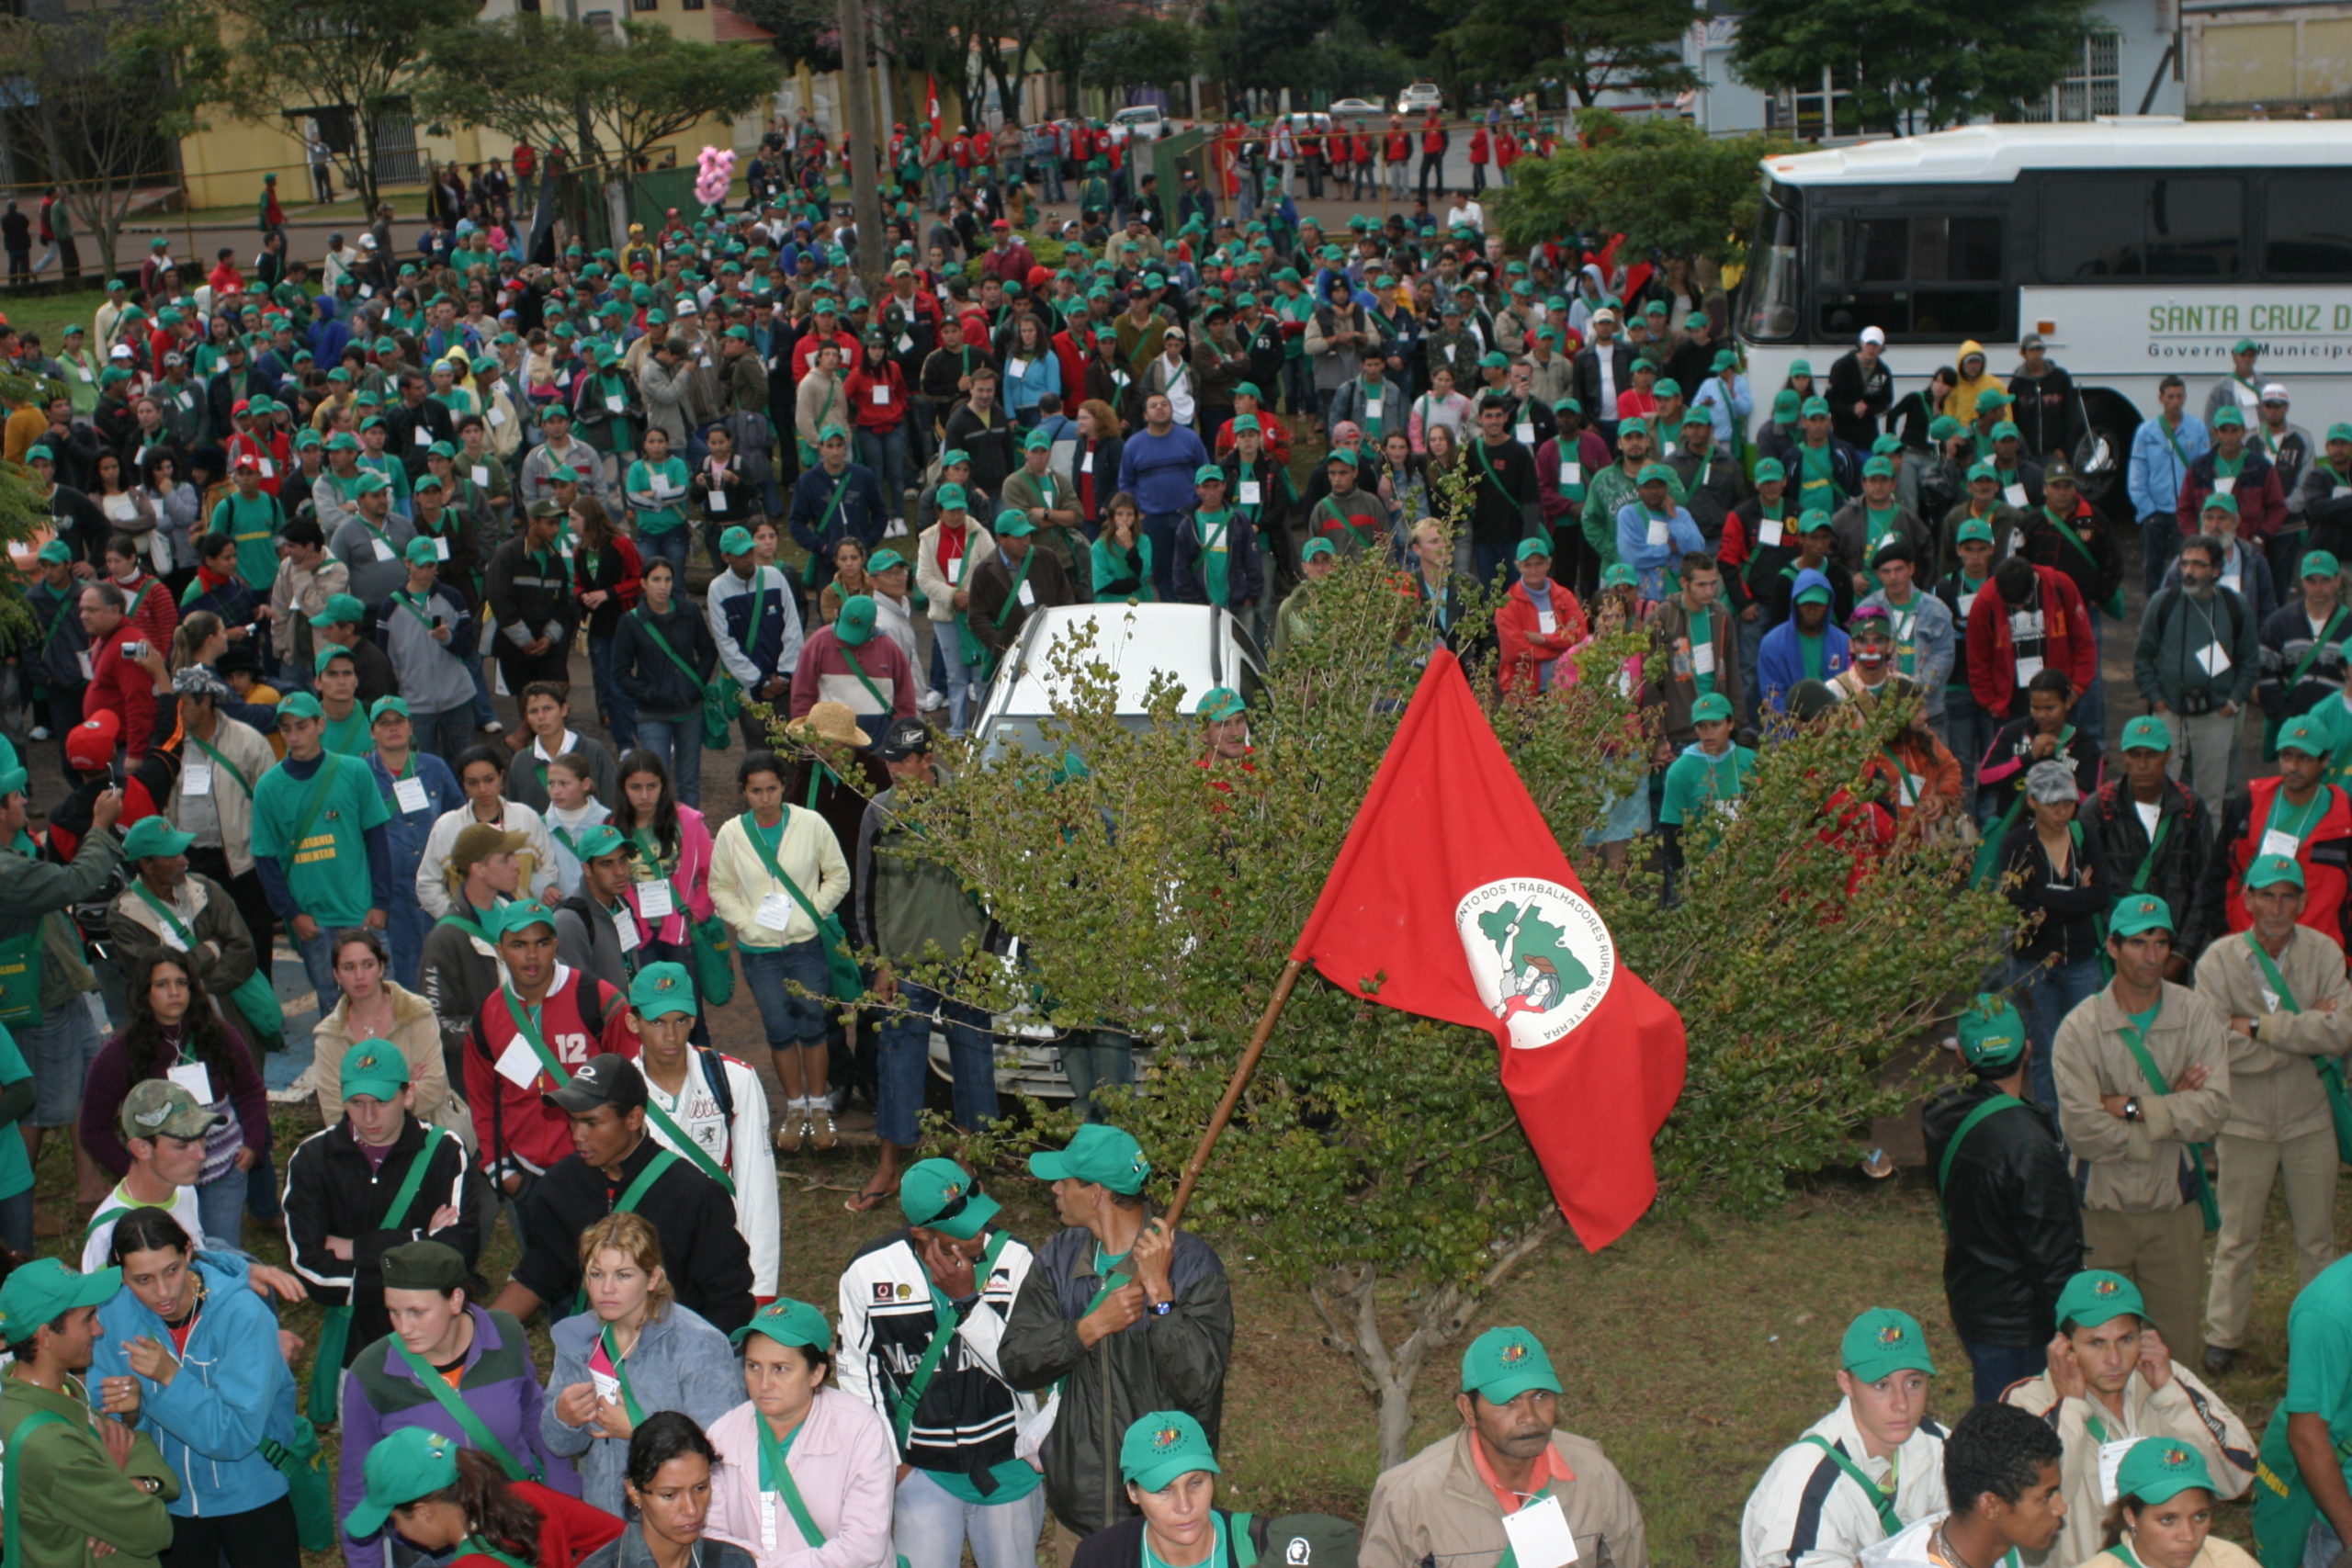 bandeira do mst erguida e centenas de pessoas reunidas